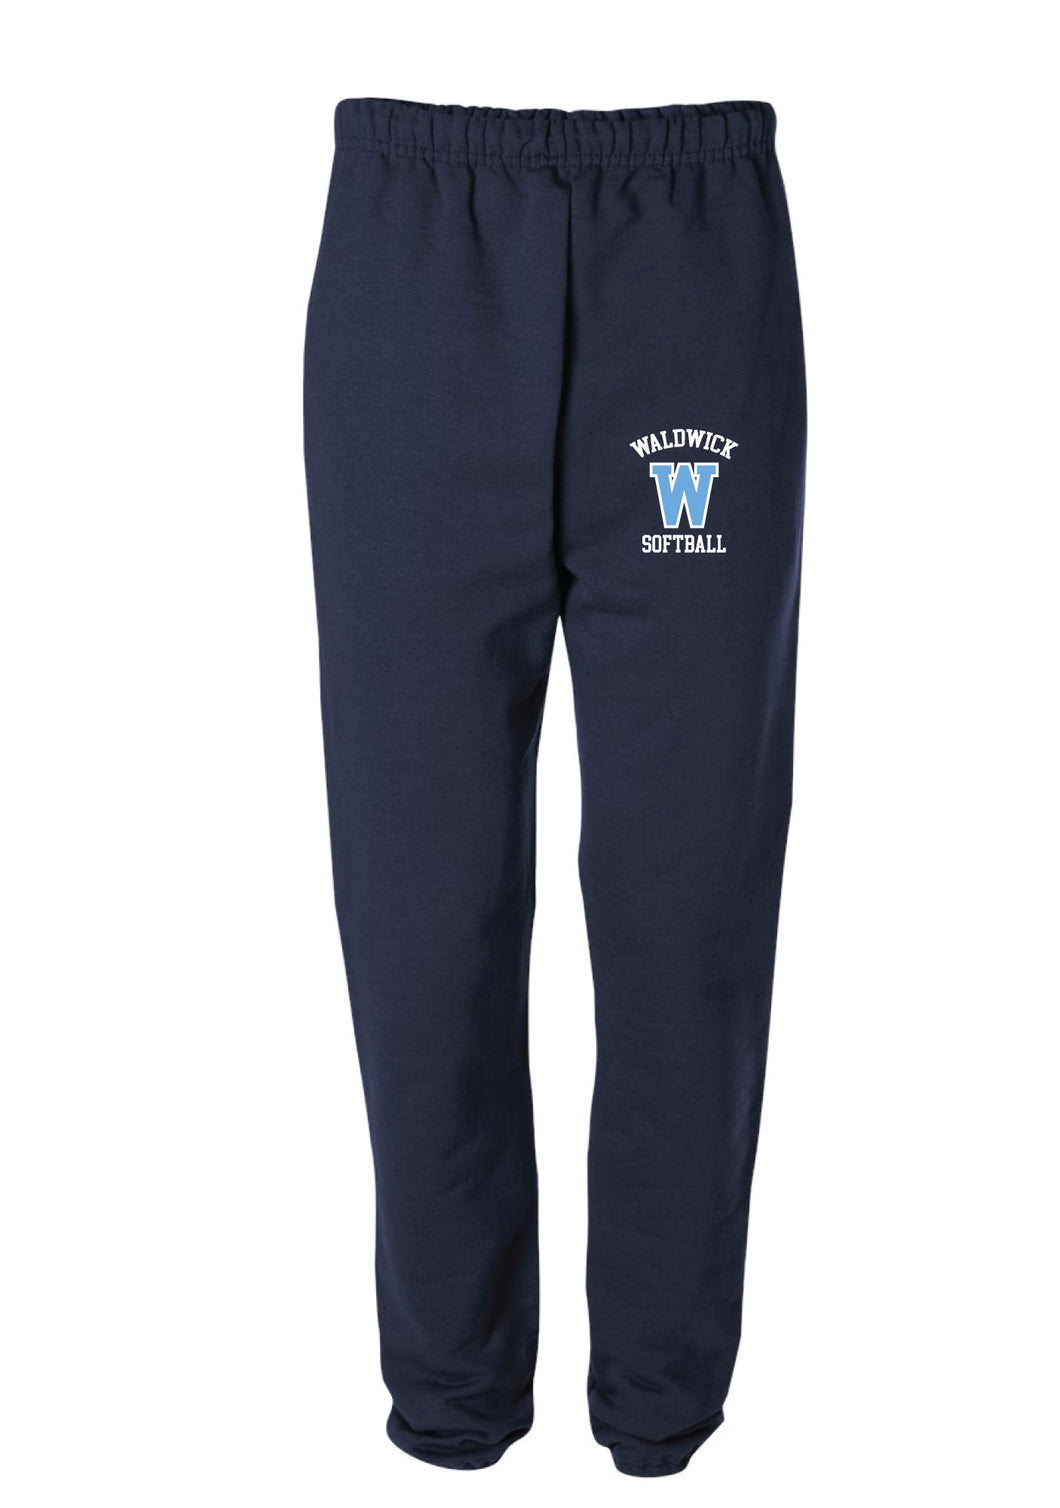 Waldwick Softball Cotton Sweatpants - Navy